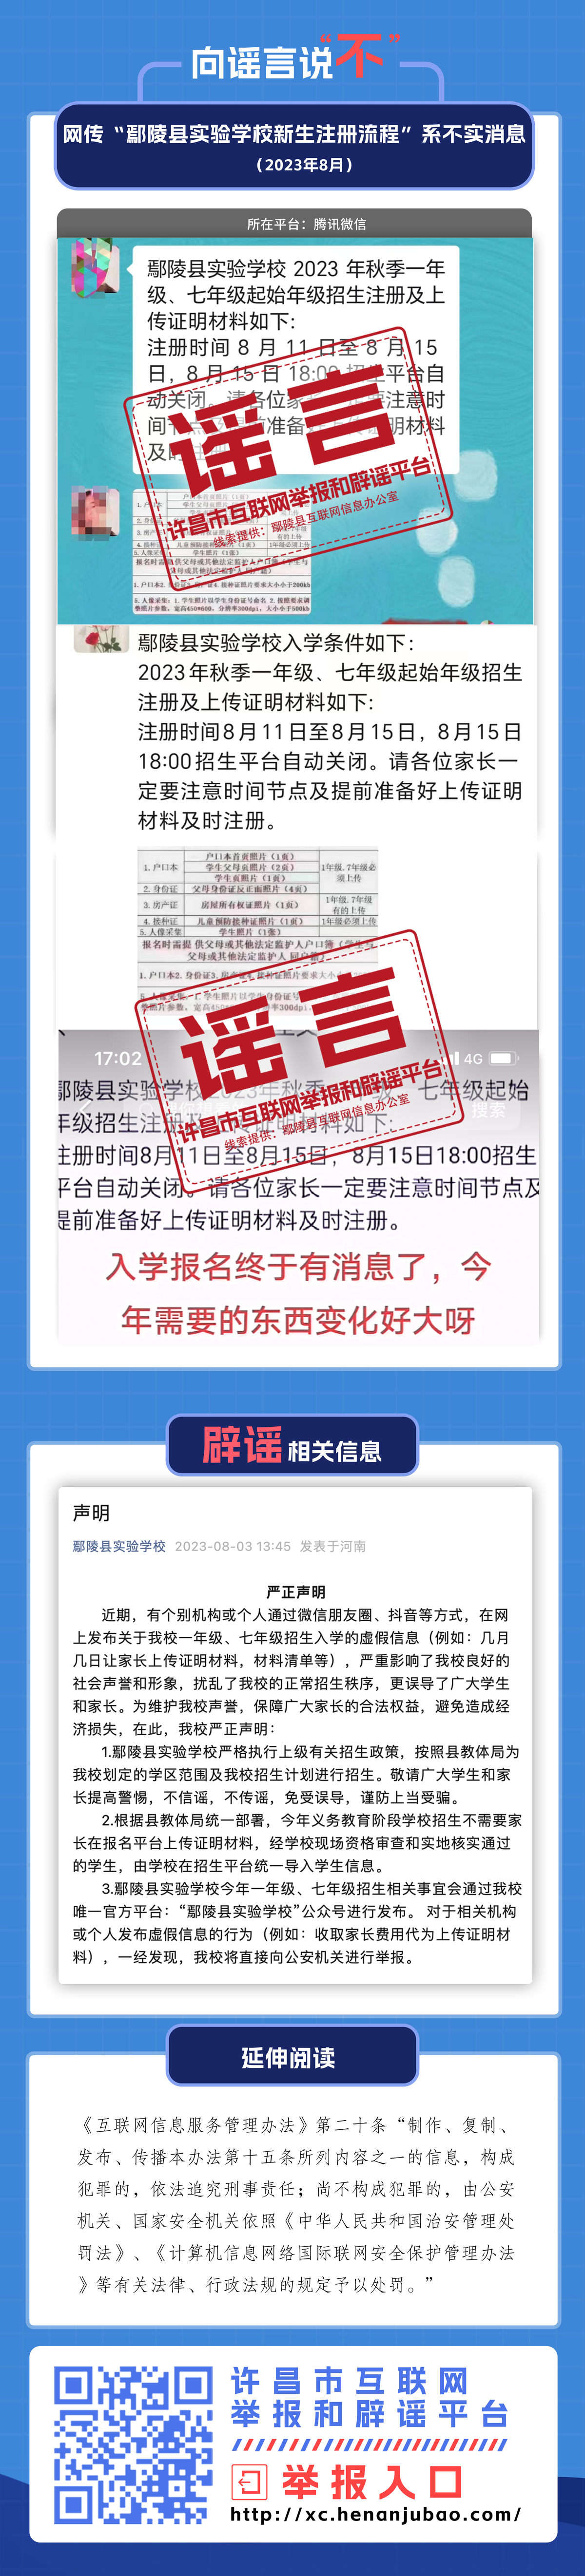 网传“鄢陵县实验学校新生注册流程”系不实消息